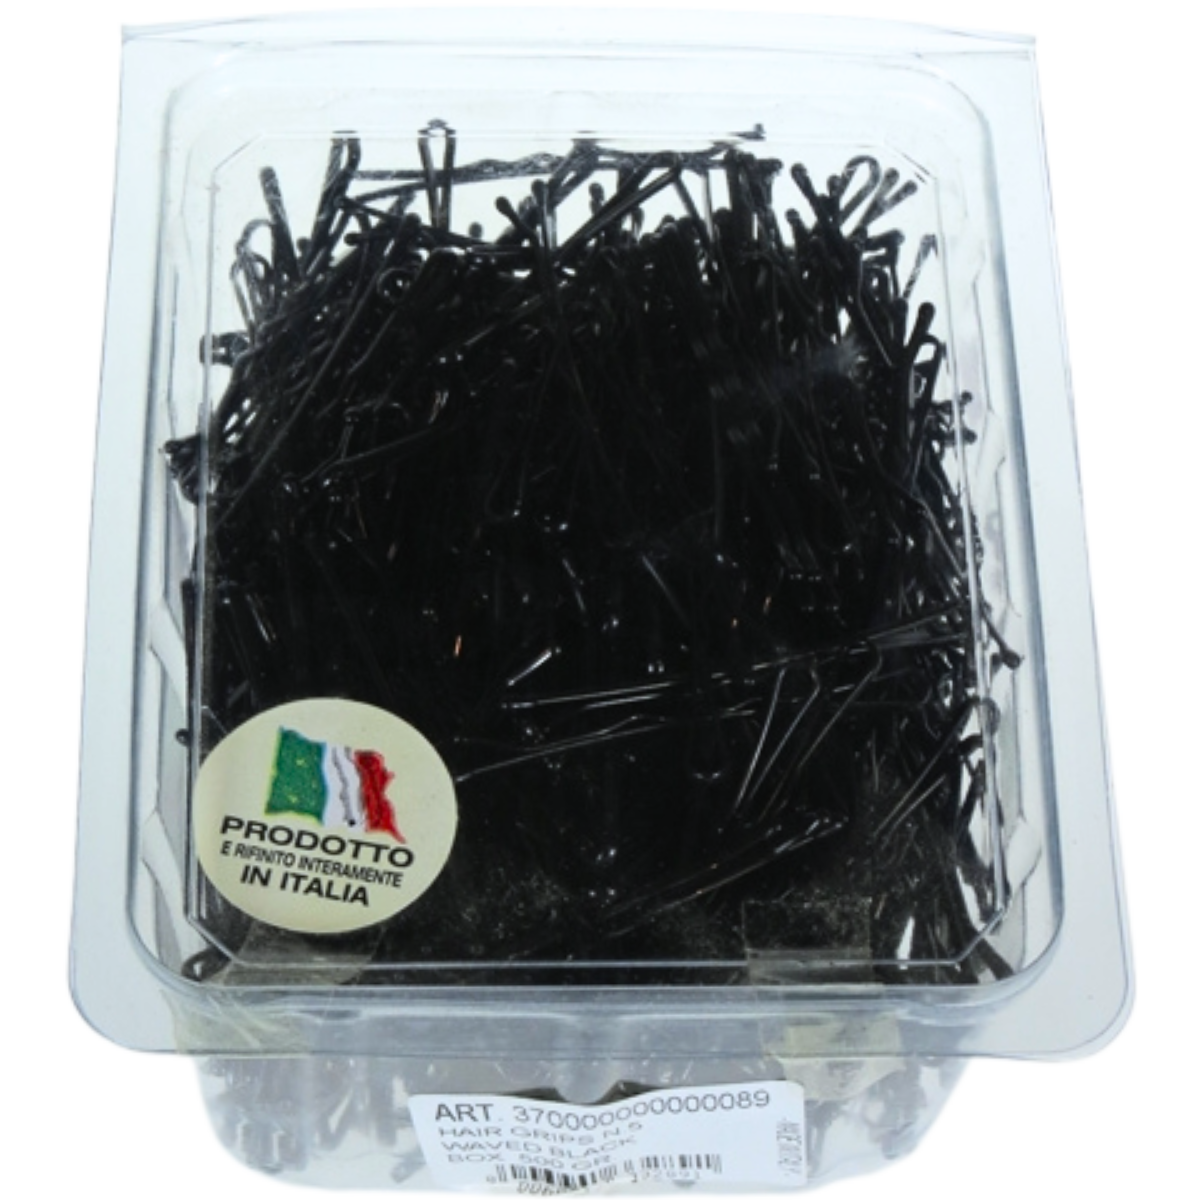 סיכות ראש שחורות איכותיות לעיצוב השיער חזקות במיוחד 500 גר` תוצרת איטליה